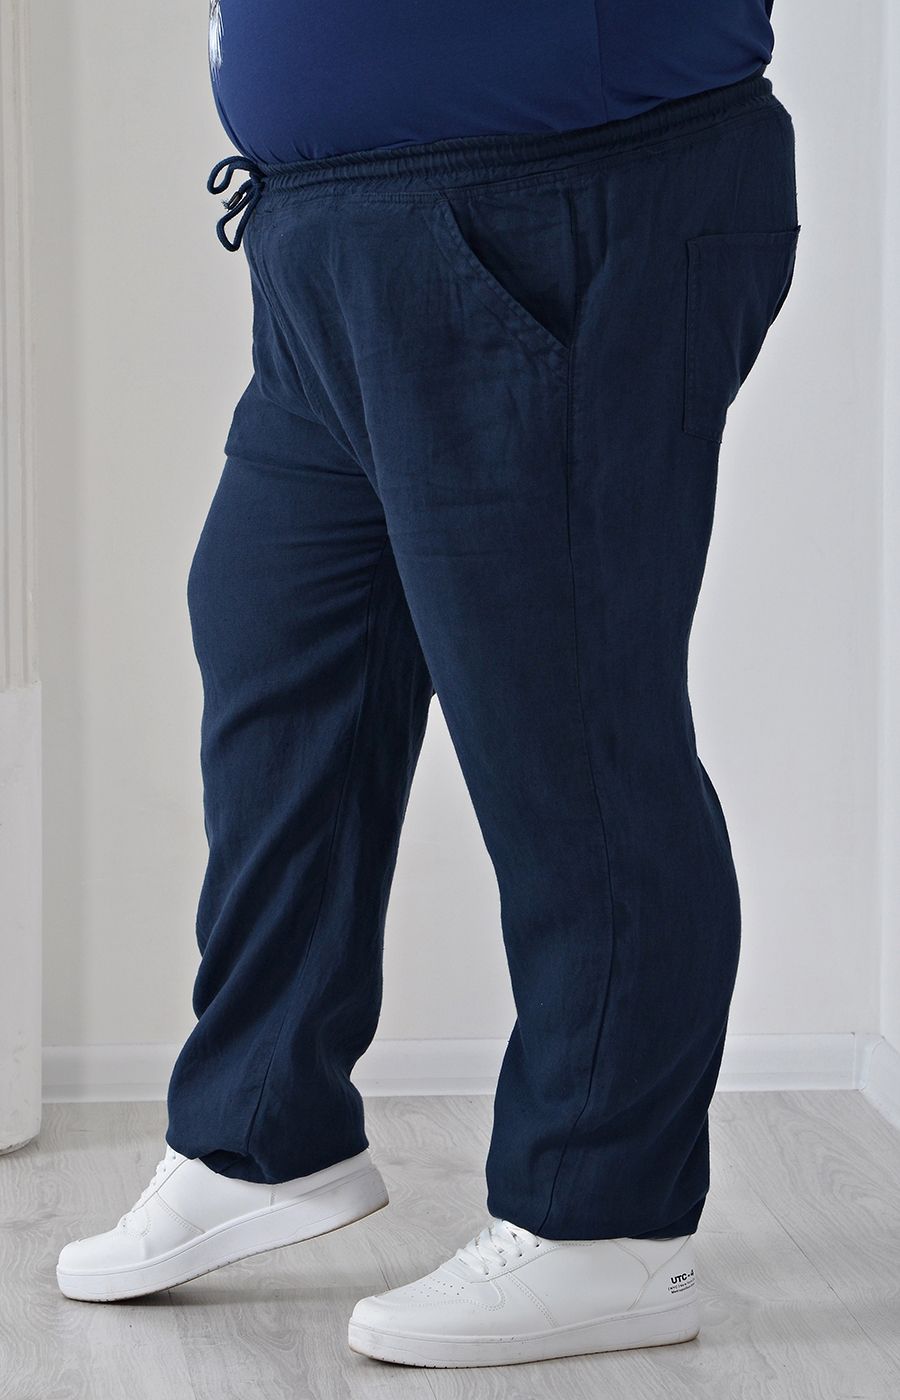 Льняные брюки синие большого размера